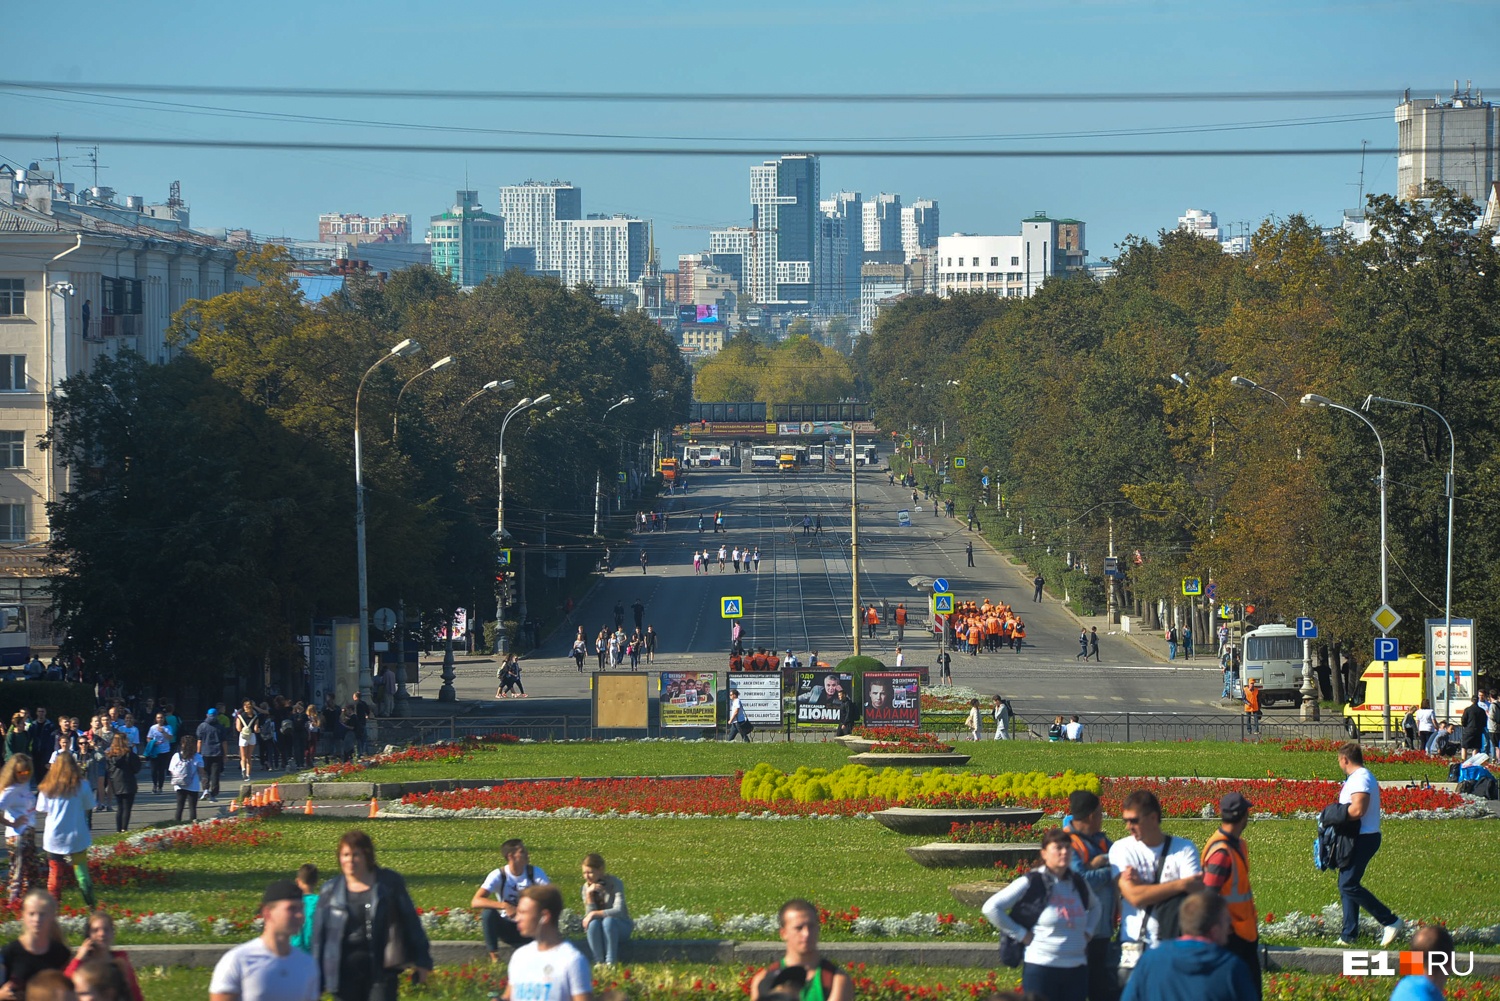 Ждем огромных пробок: ради бегунов на центральных улицах Екатеринбурга перекроют движение